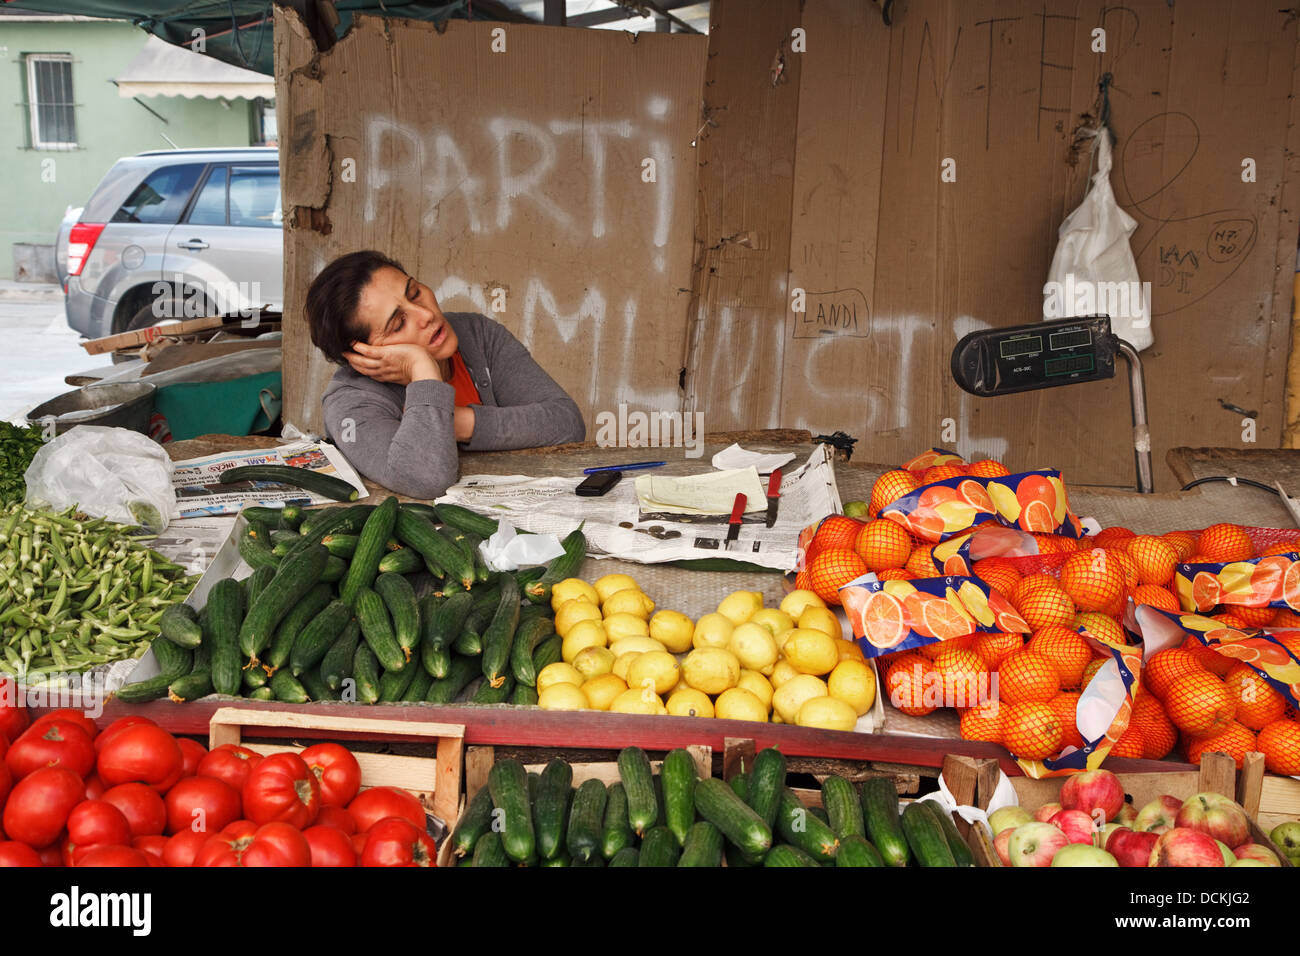 Obst und Gemüse Verkäufer schlafen in ihrem Stall in Tirana, Albanien  Stockfotografie - Alamy